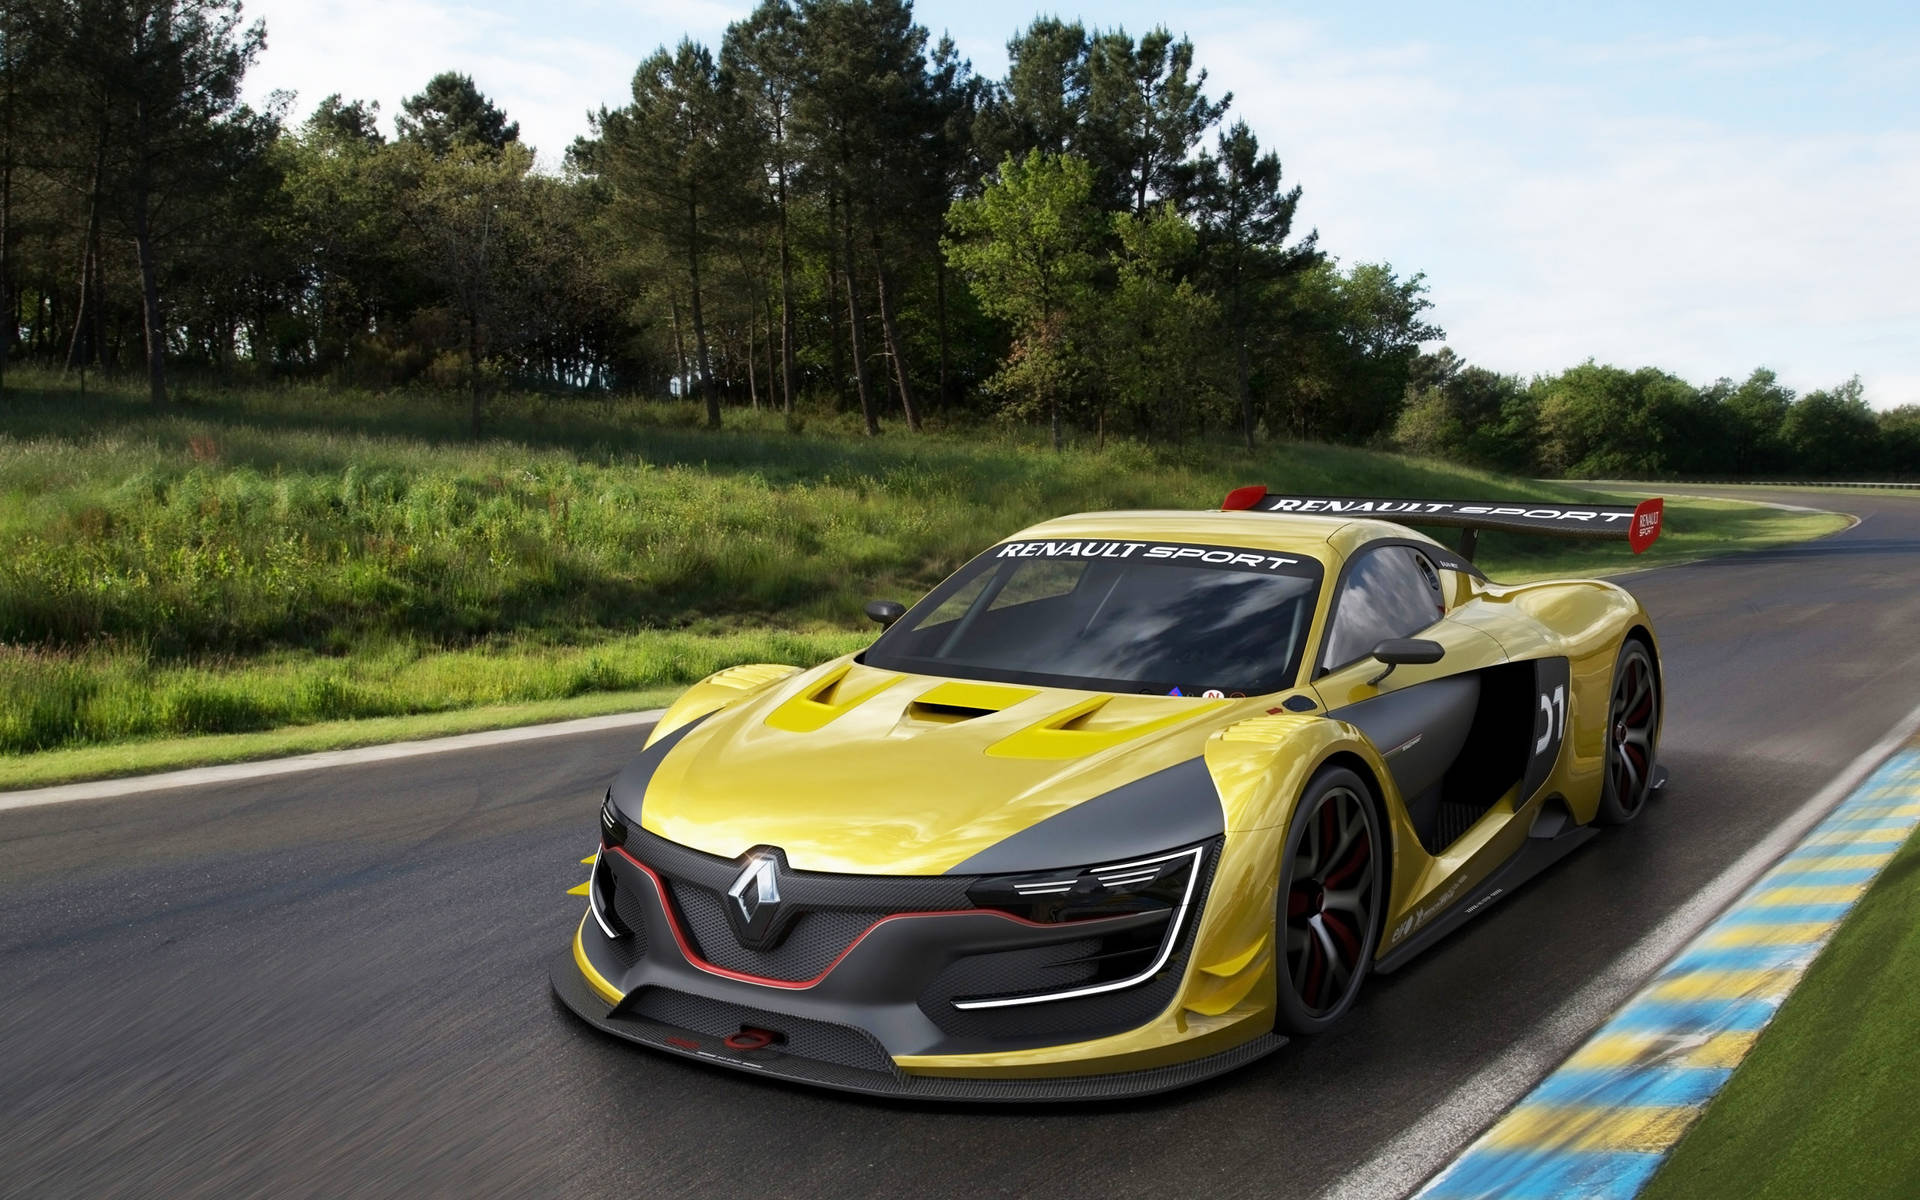 Udforsk pragtfulde billeder af Renault-sportbiler, der sætter tempoet til racetracks over hele verden i dette dynamiske 4K-tapet. Wallpaper